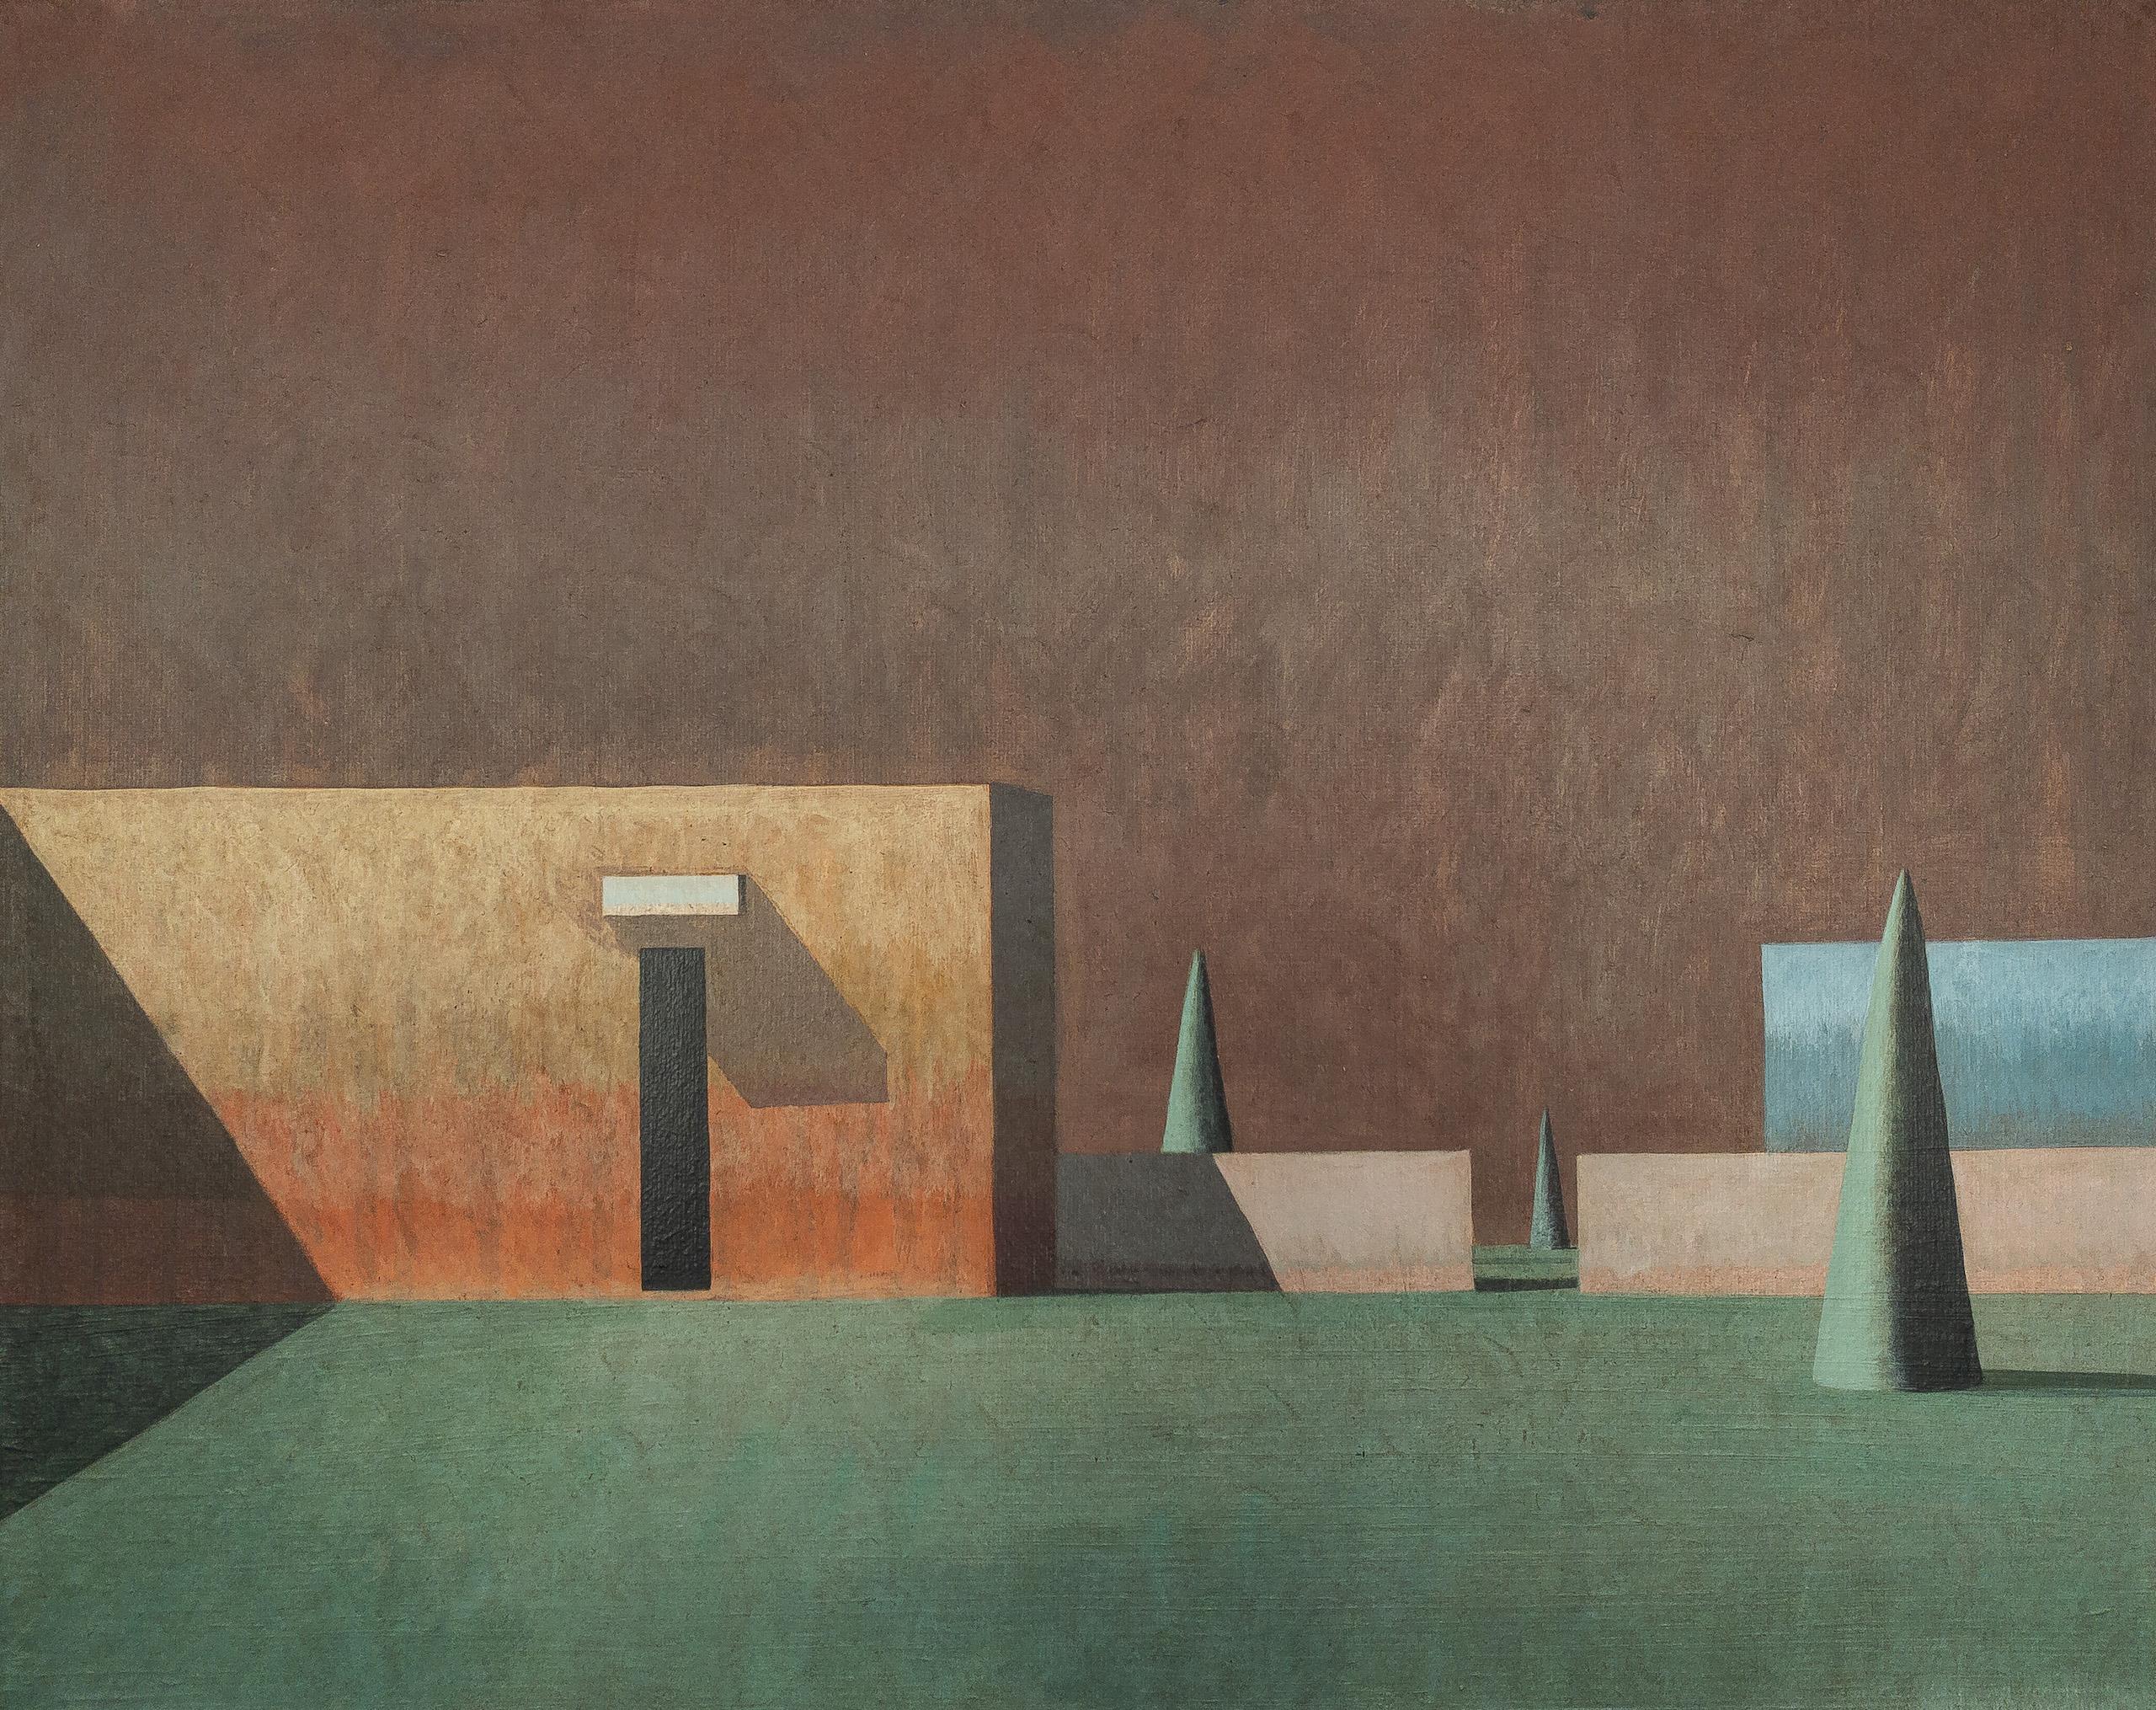 PAS de l'artiste contemporain espagnol Ramon Enrich. 
Acrylique sur toile, 40 cm x 50 cm.

Dans ces peintures, l'artiste établit une conversation entre l'architecture et le paysage dans une œuvre figurative arborant des formes géométriques et une